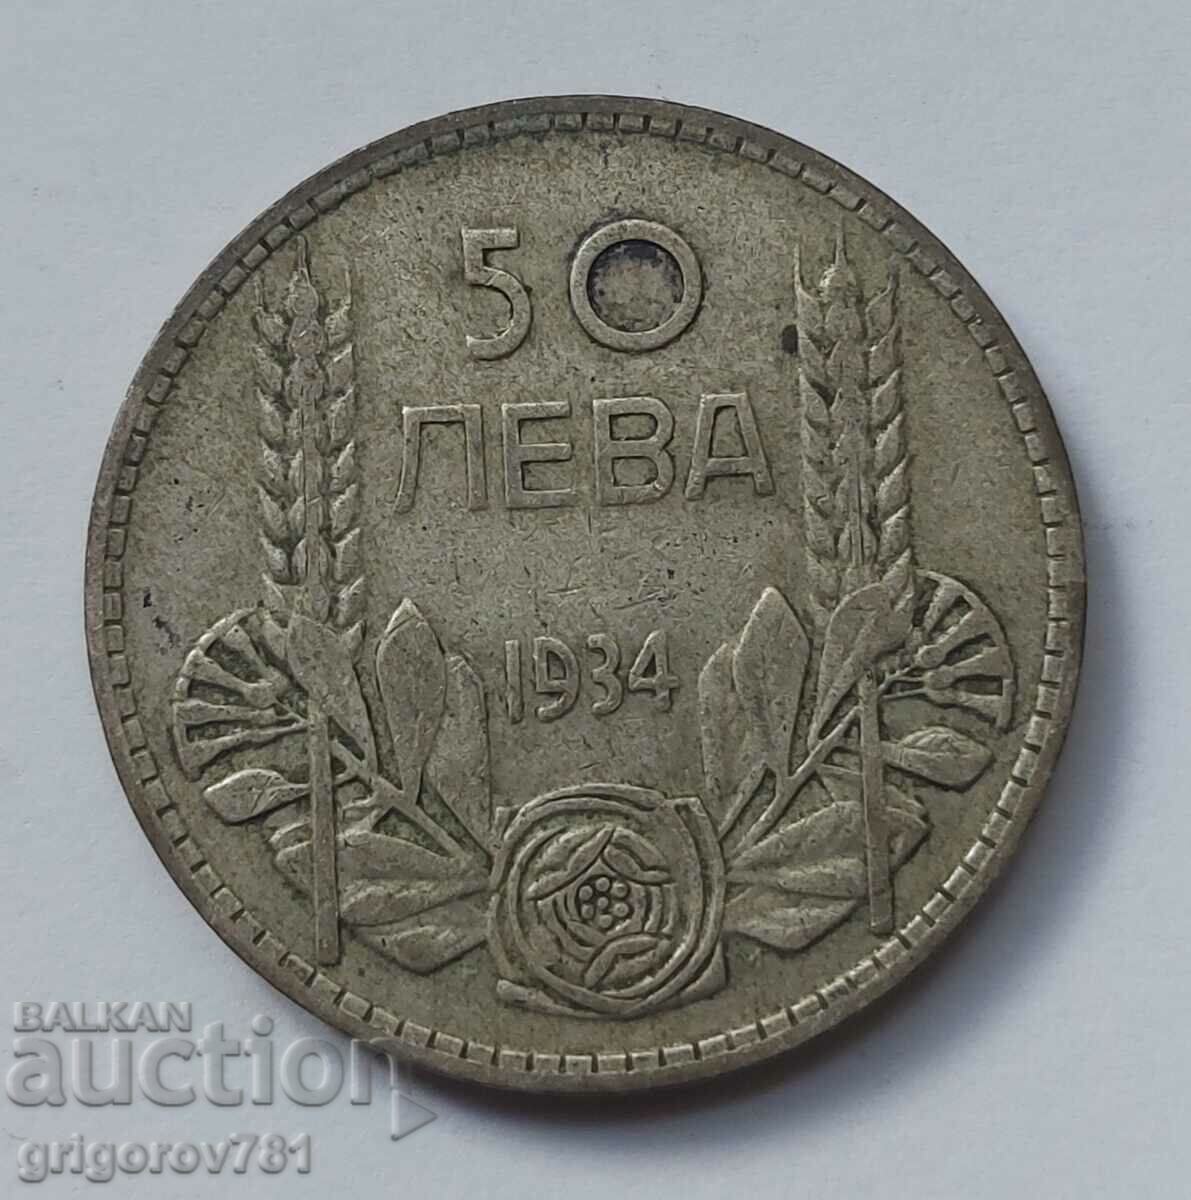 50 leva argint Bulgaria 1934 - monedă de argint #3